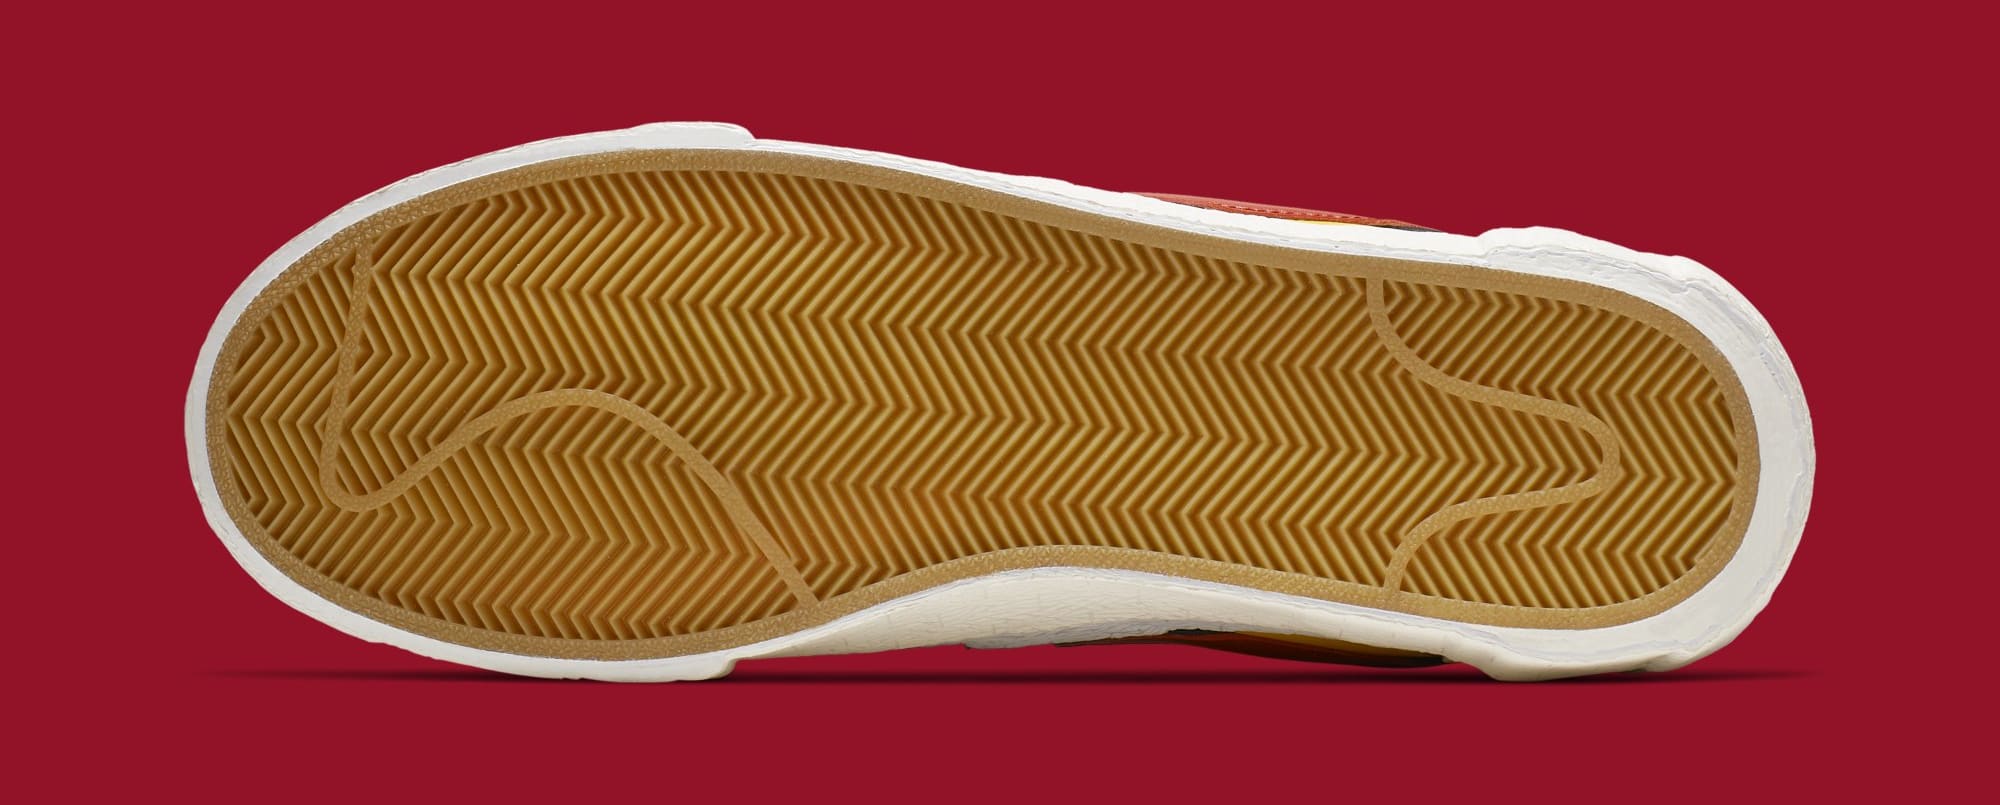 Sacai x Nike Blazer High &#x27;Varsity Maize/Varsity Red/Midnight Navy&#x27; BV0072-700 (Bottom)